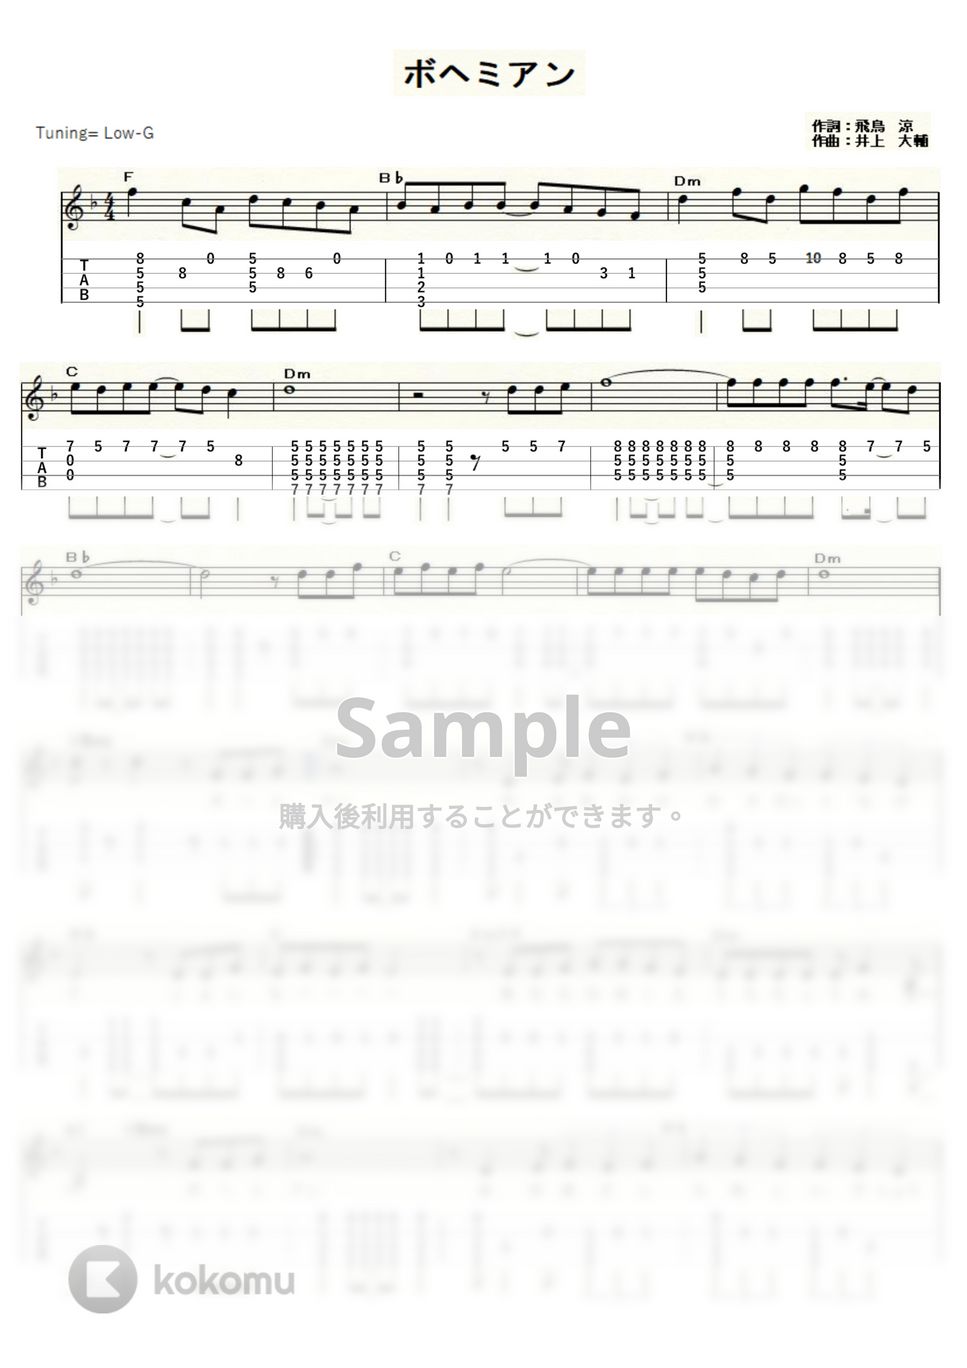 葛城ユキ - ボヘミアン (ｳｸﾚﾚｿﾛ / Low-G / 中級) by ukulelepapa